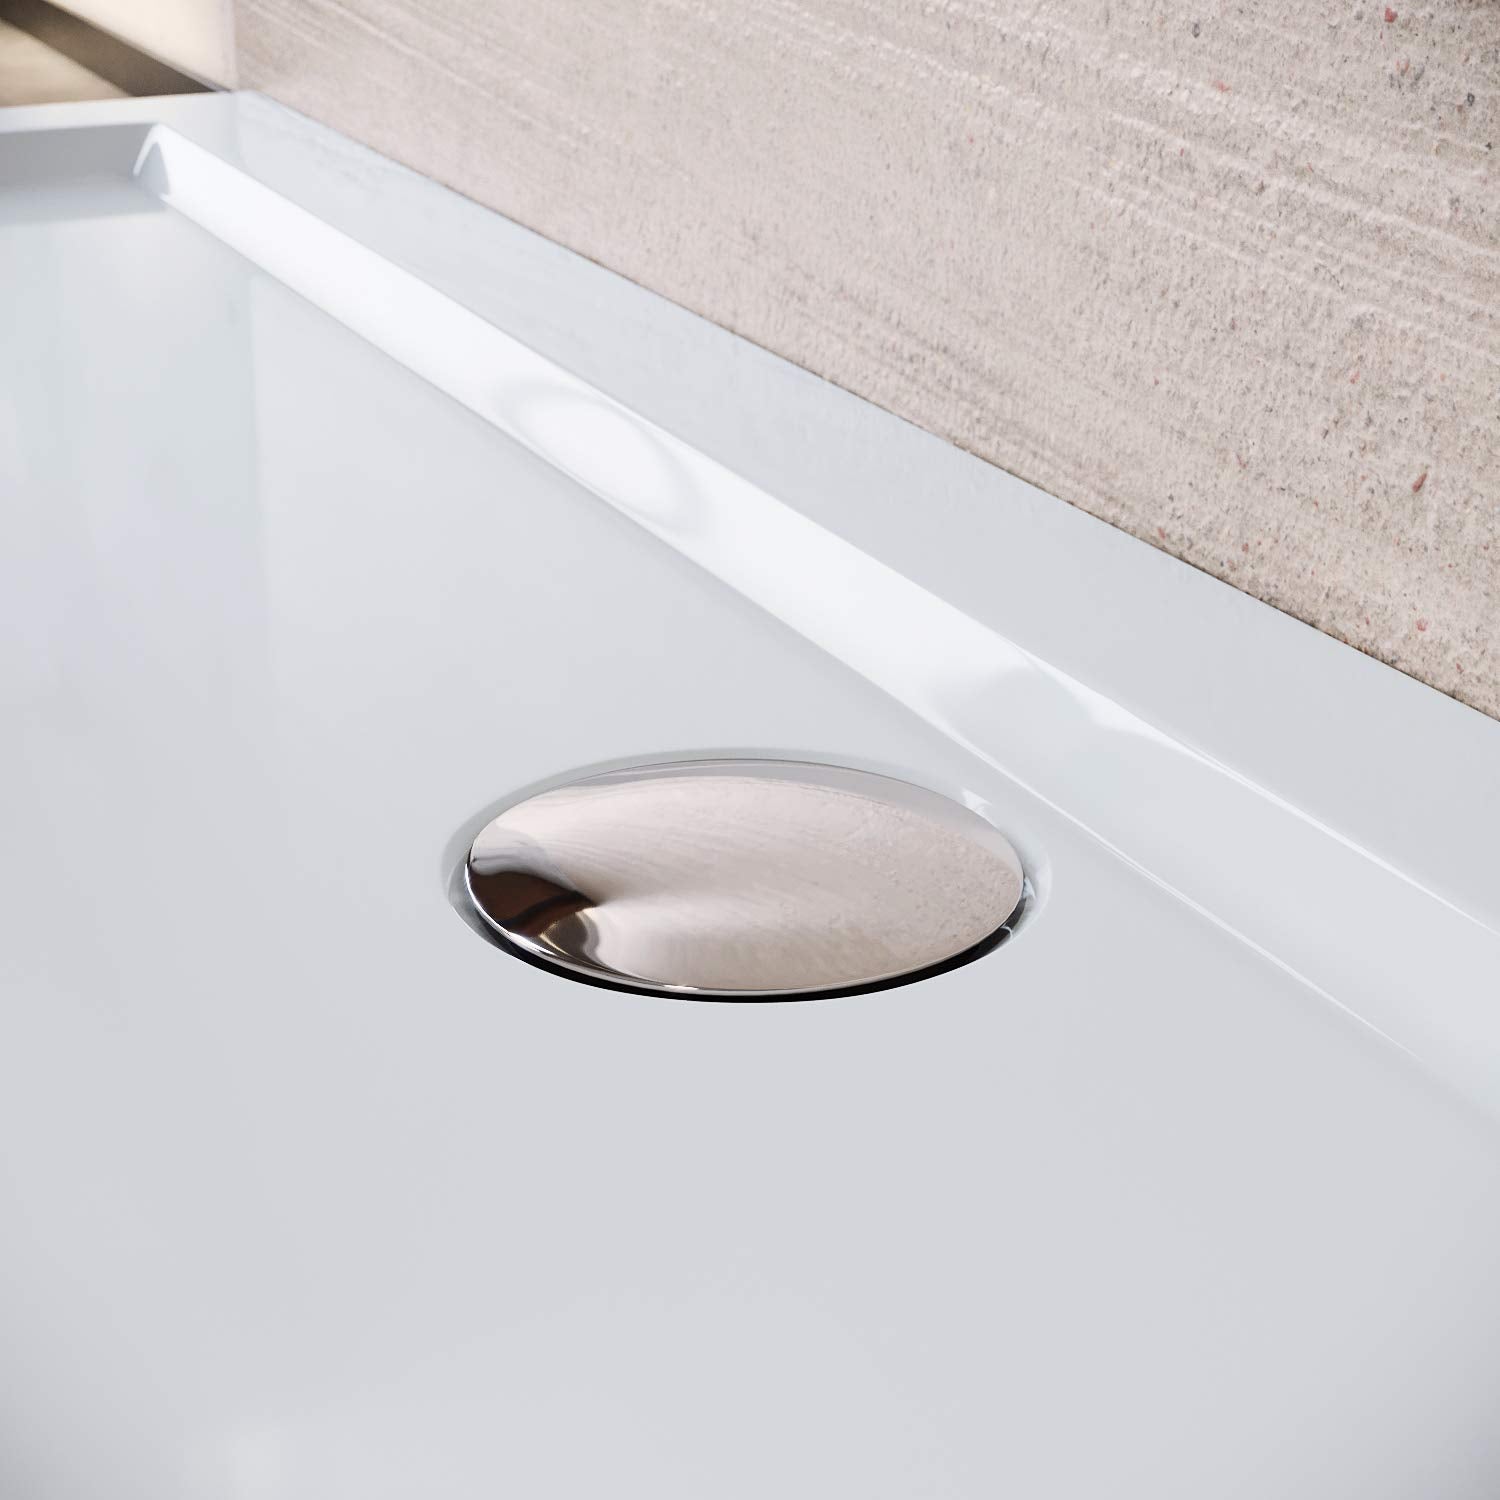 SONNI Quadratische Form Duschtasse - mit flachem Design,Rutschfeste Duschwanne aus ABS-Acryl-Paneel, inklusive Ablaufgarnitur